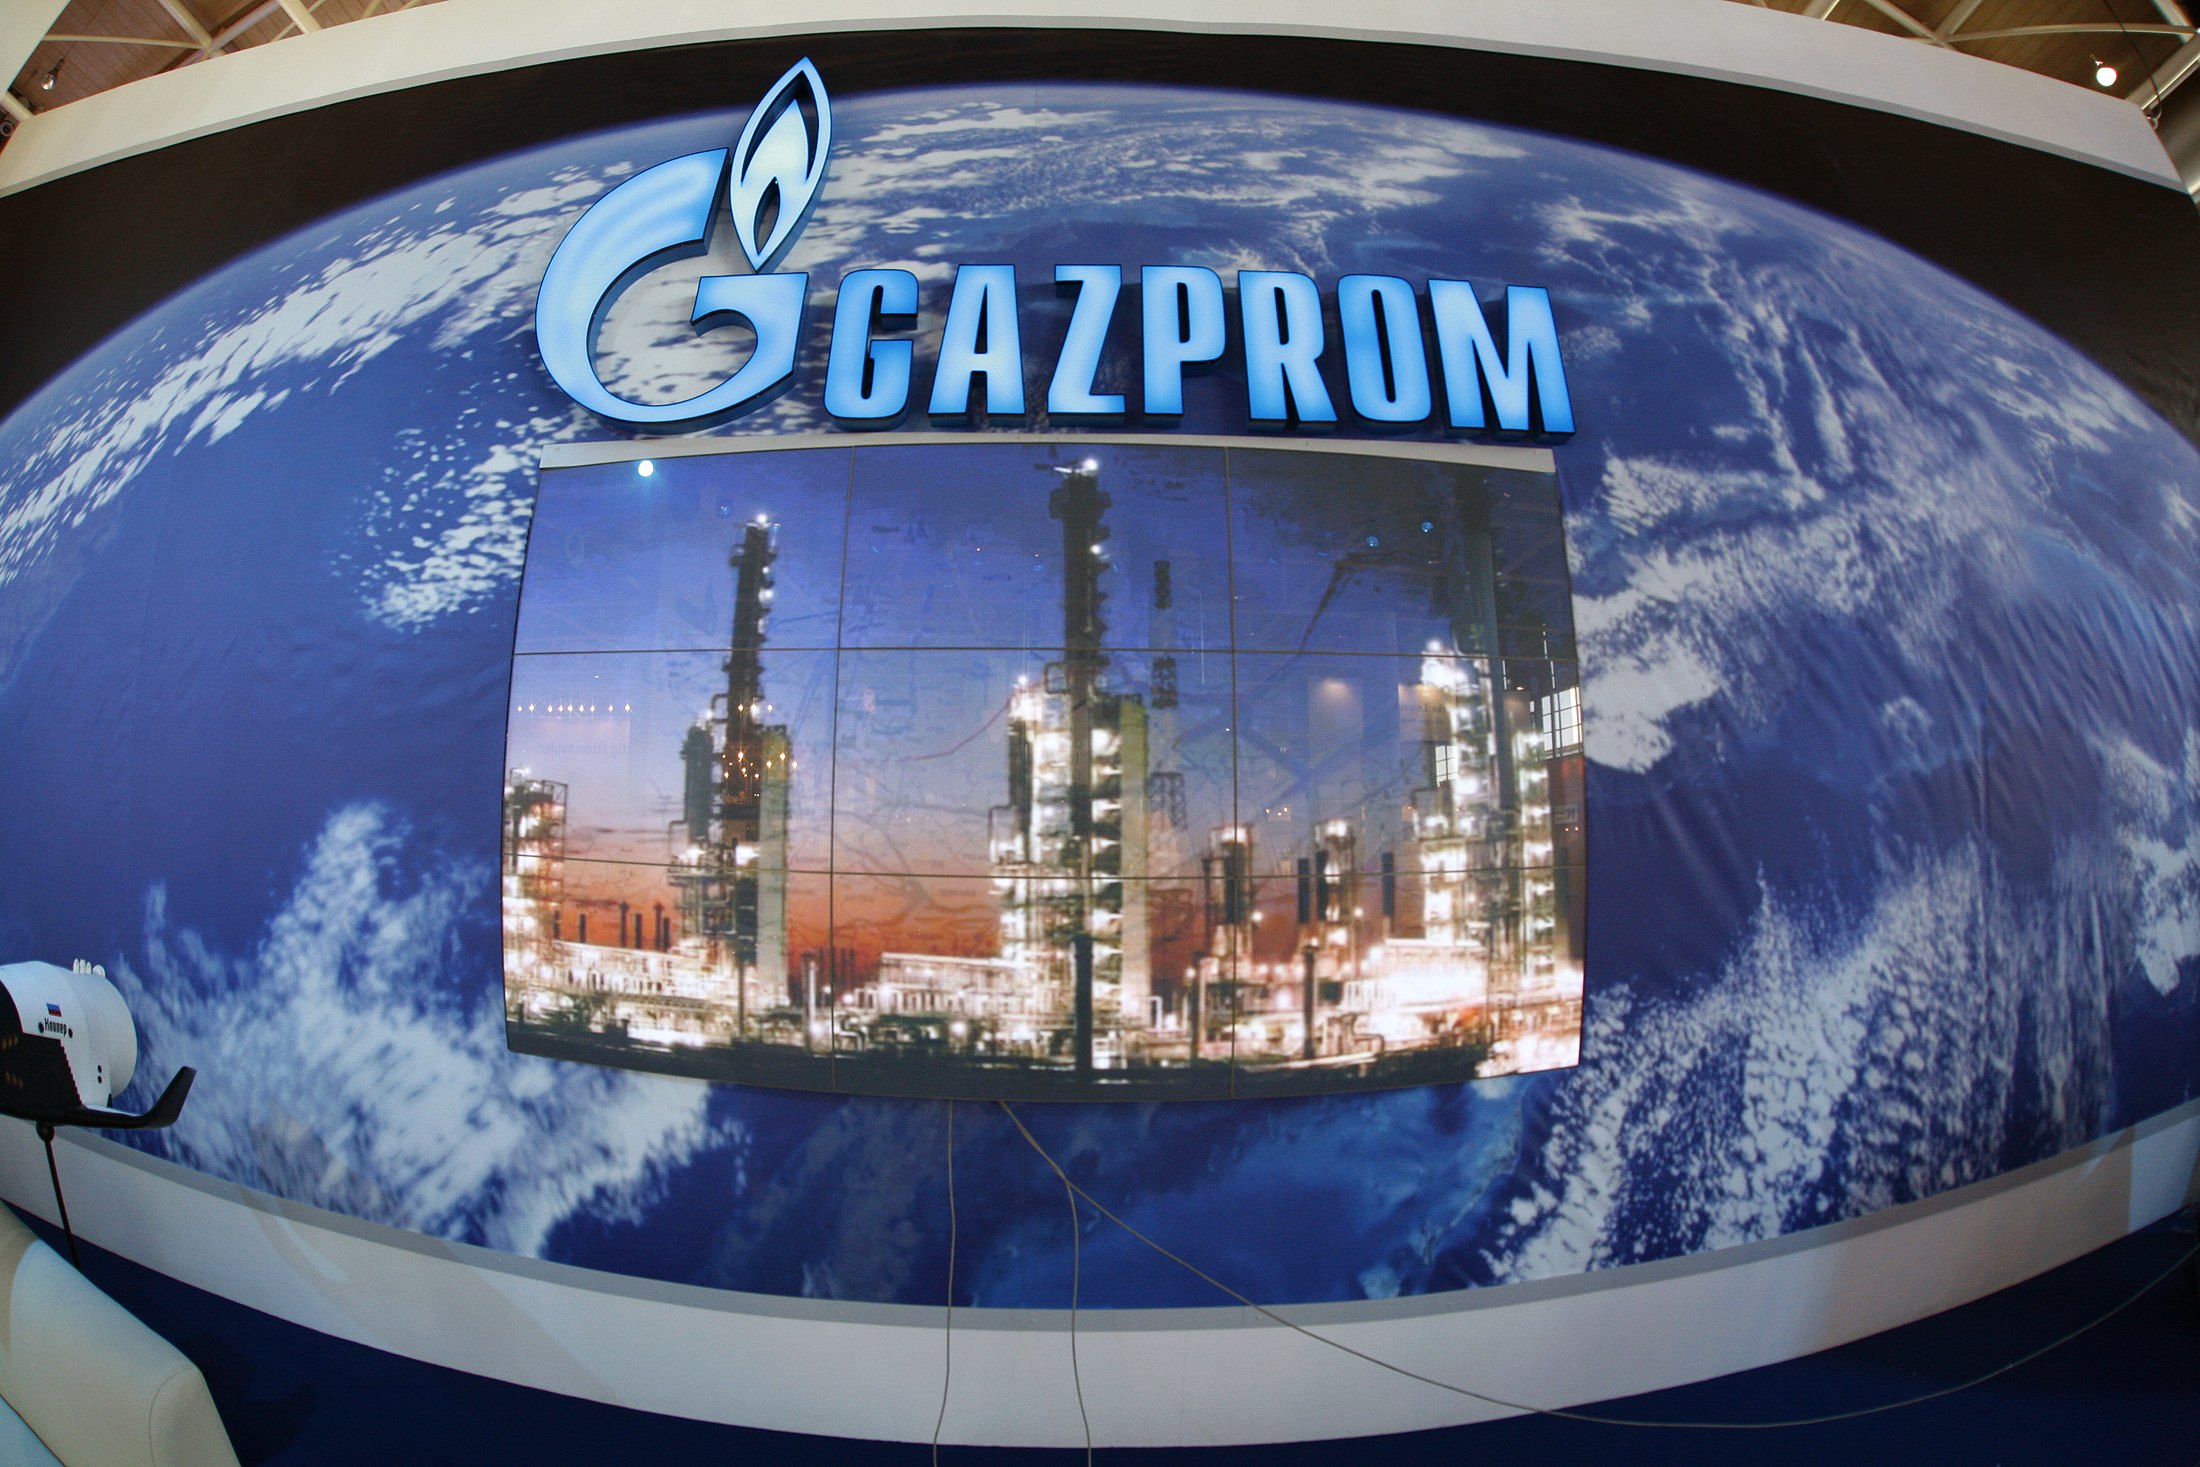 Συμφωνία ΔΕΠΑ - Gazprom για μείωση 15% στην τιμή του φυσικού αερίου